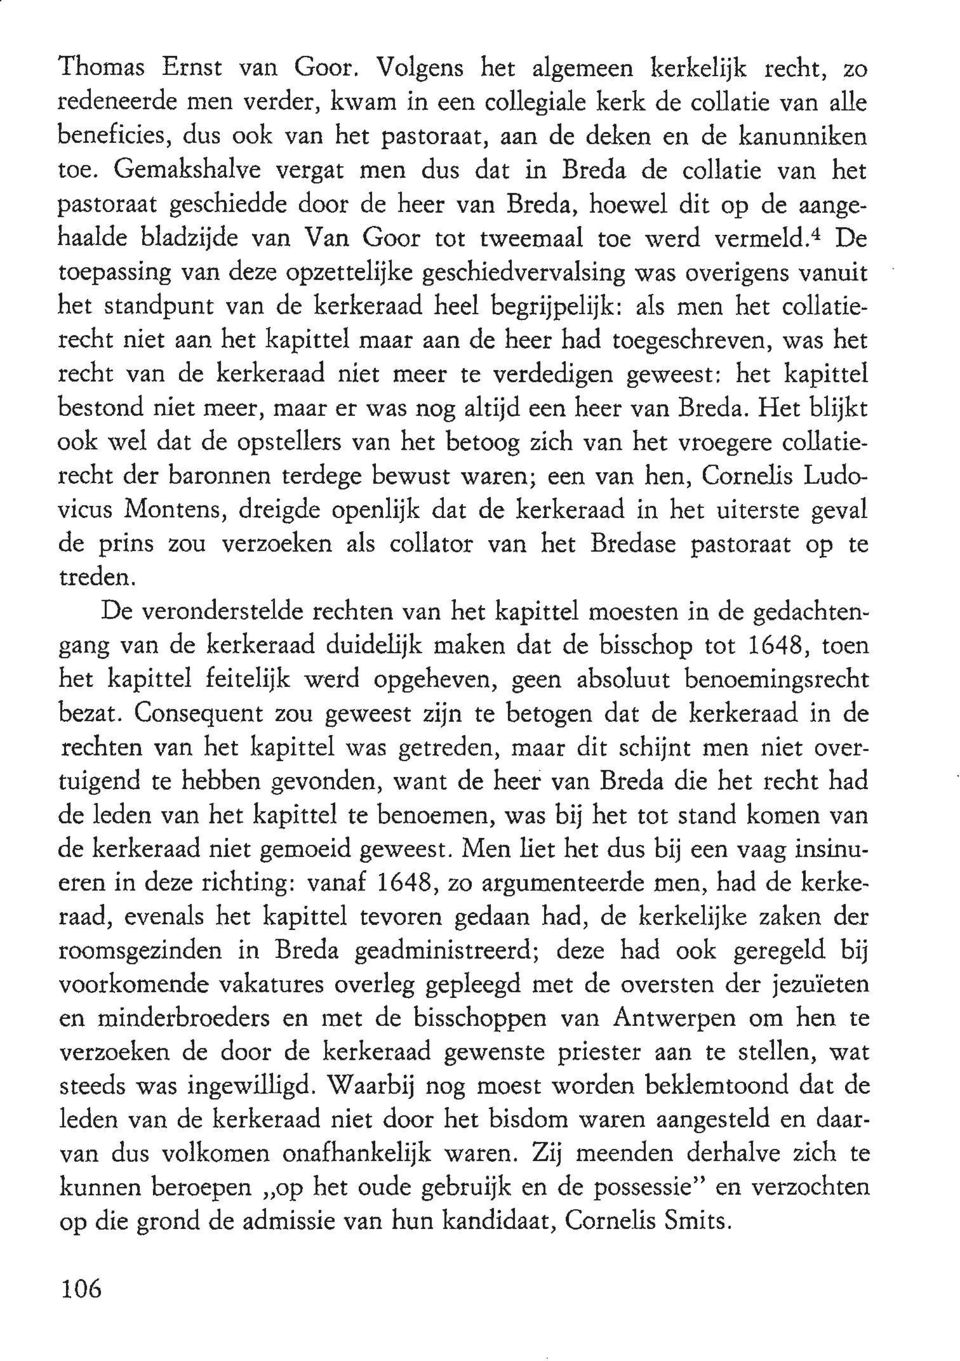 Gemakshalve vergat men dus dat in Breda de collatie van het pastoraat geschiedde door de heer van Breda, hoewel dit op de aangehaalde bladzijde van Van Goor tot tweemaal toe werd vermeld.